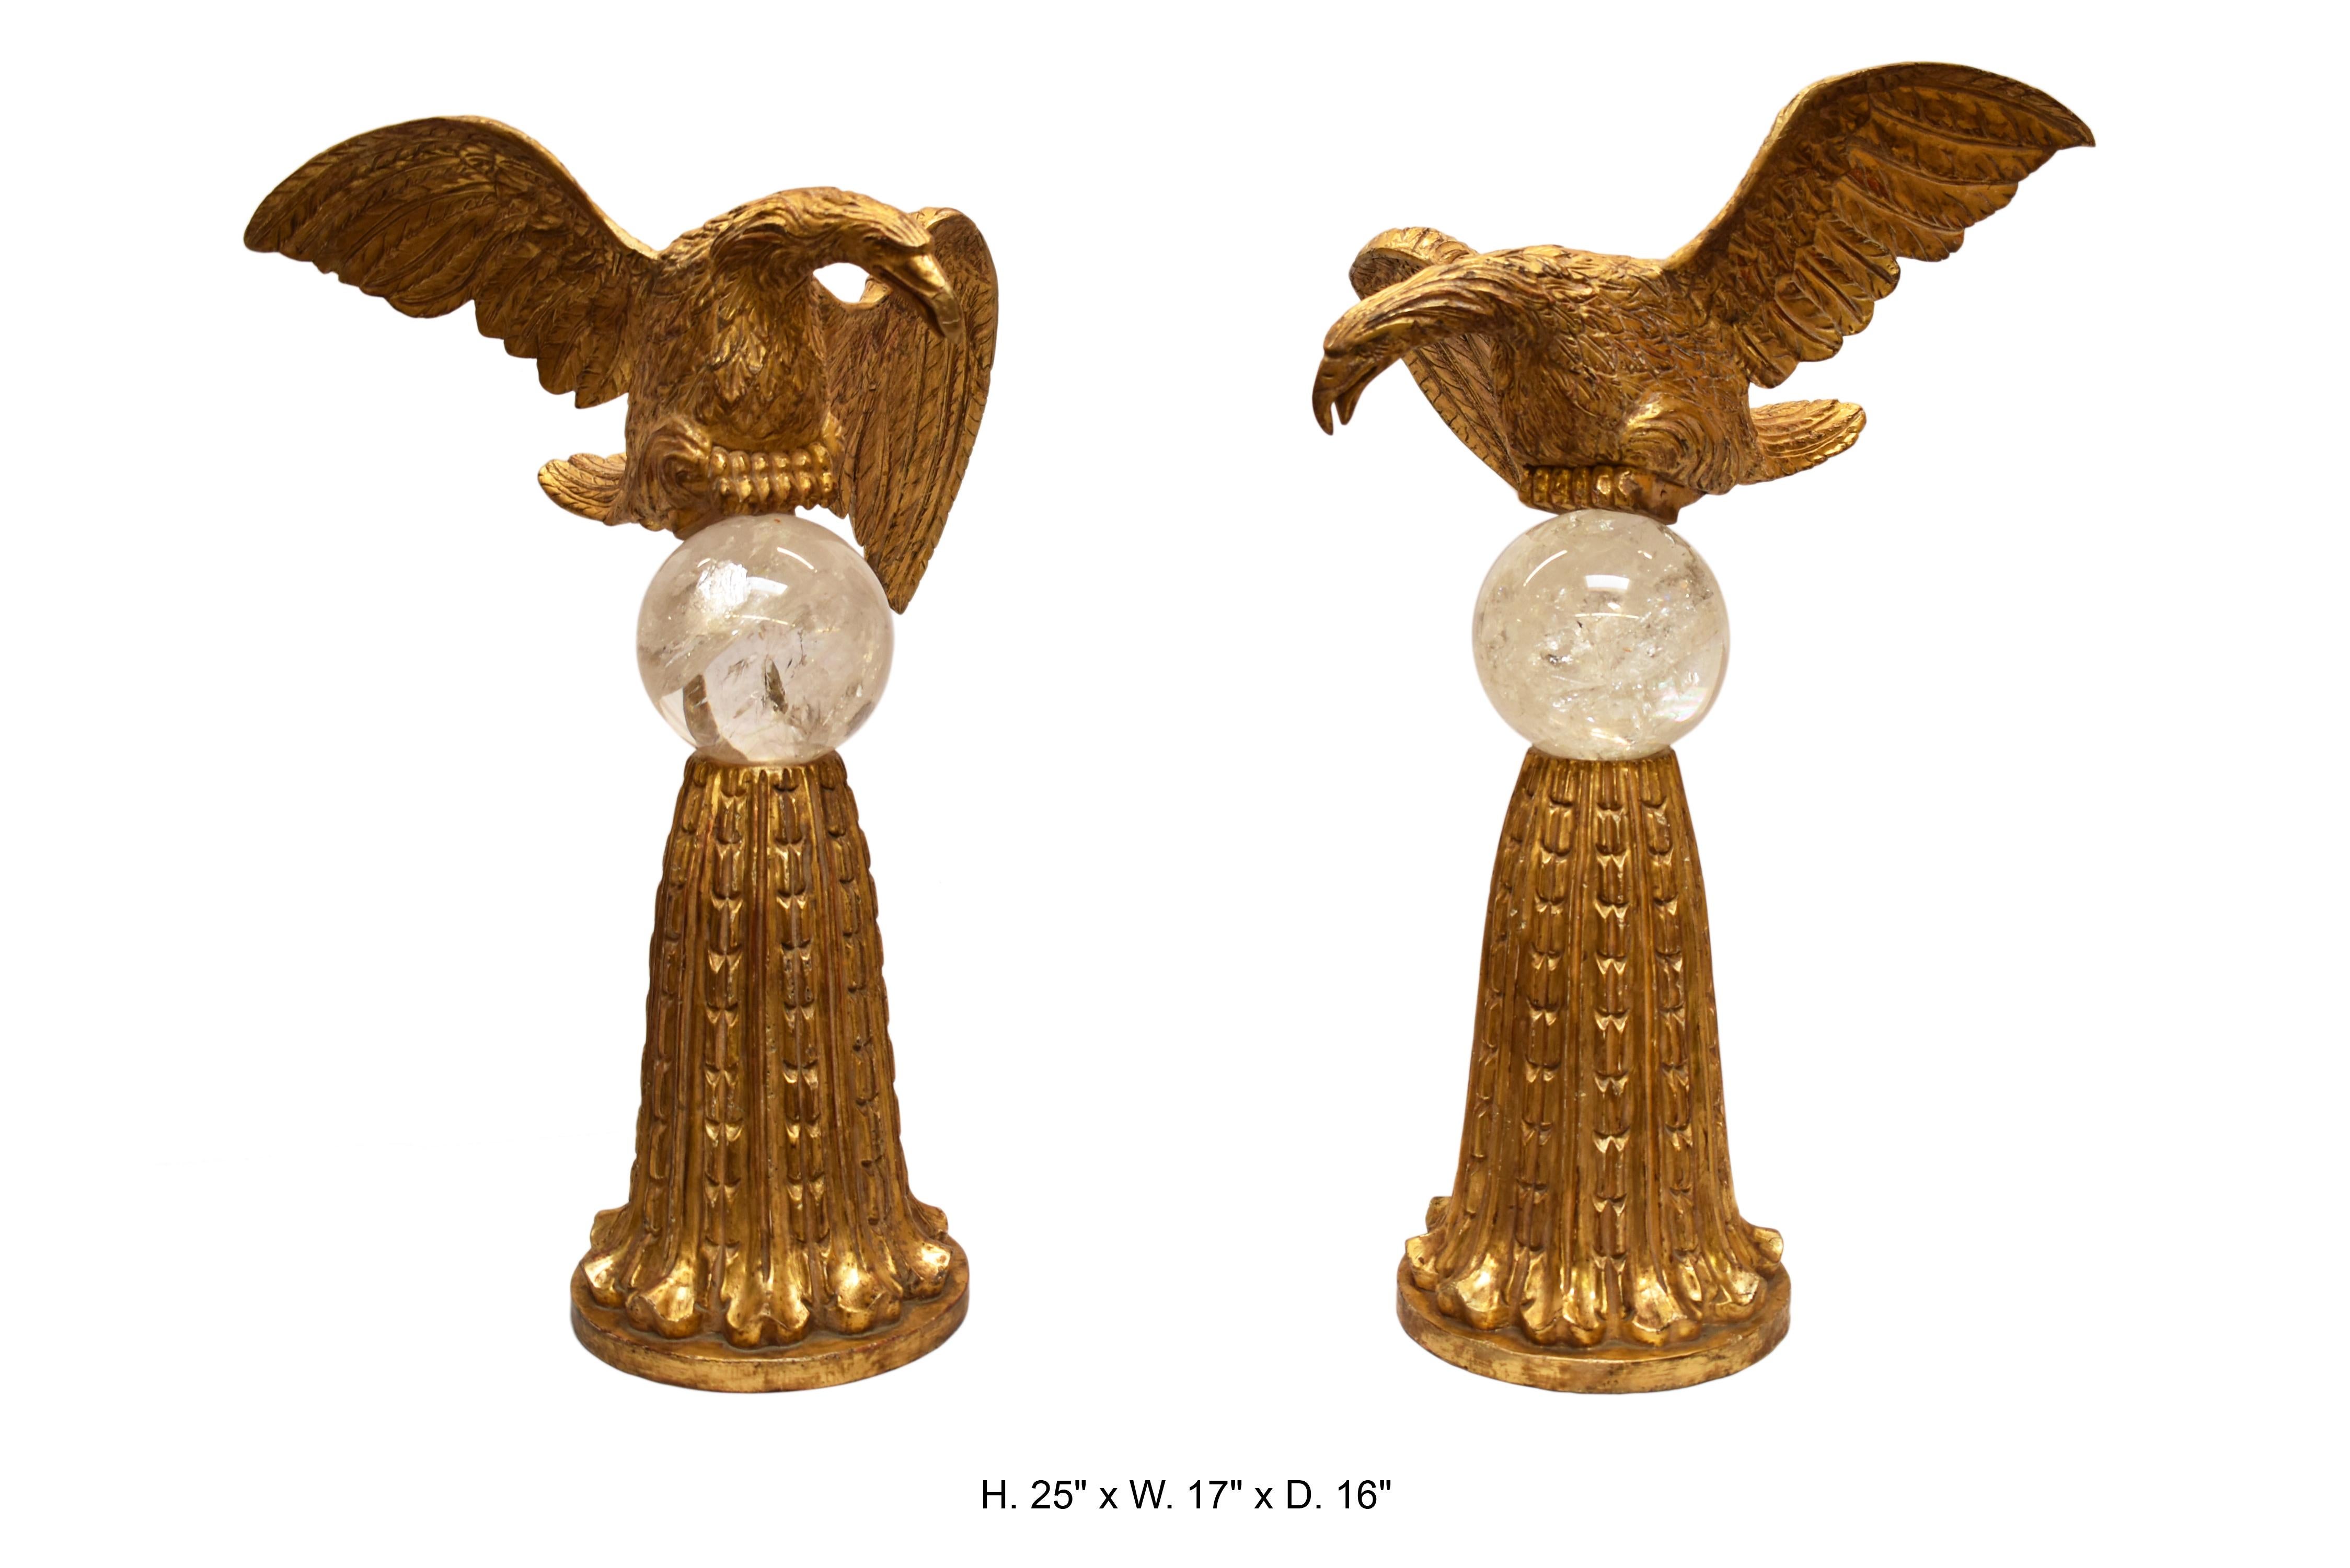 Paire opposée d'aigles en bois doré finement sculpté sur de grandes sphères en cristal de roche reposant sur des bases en bois doré finement sculpté avec motif d'acanthe.

Mesures : H 25